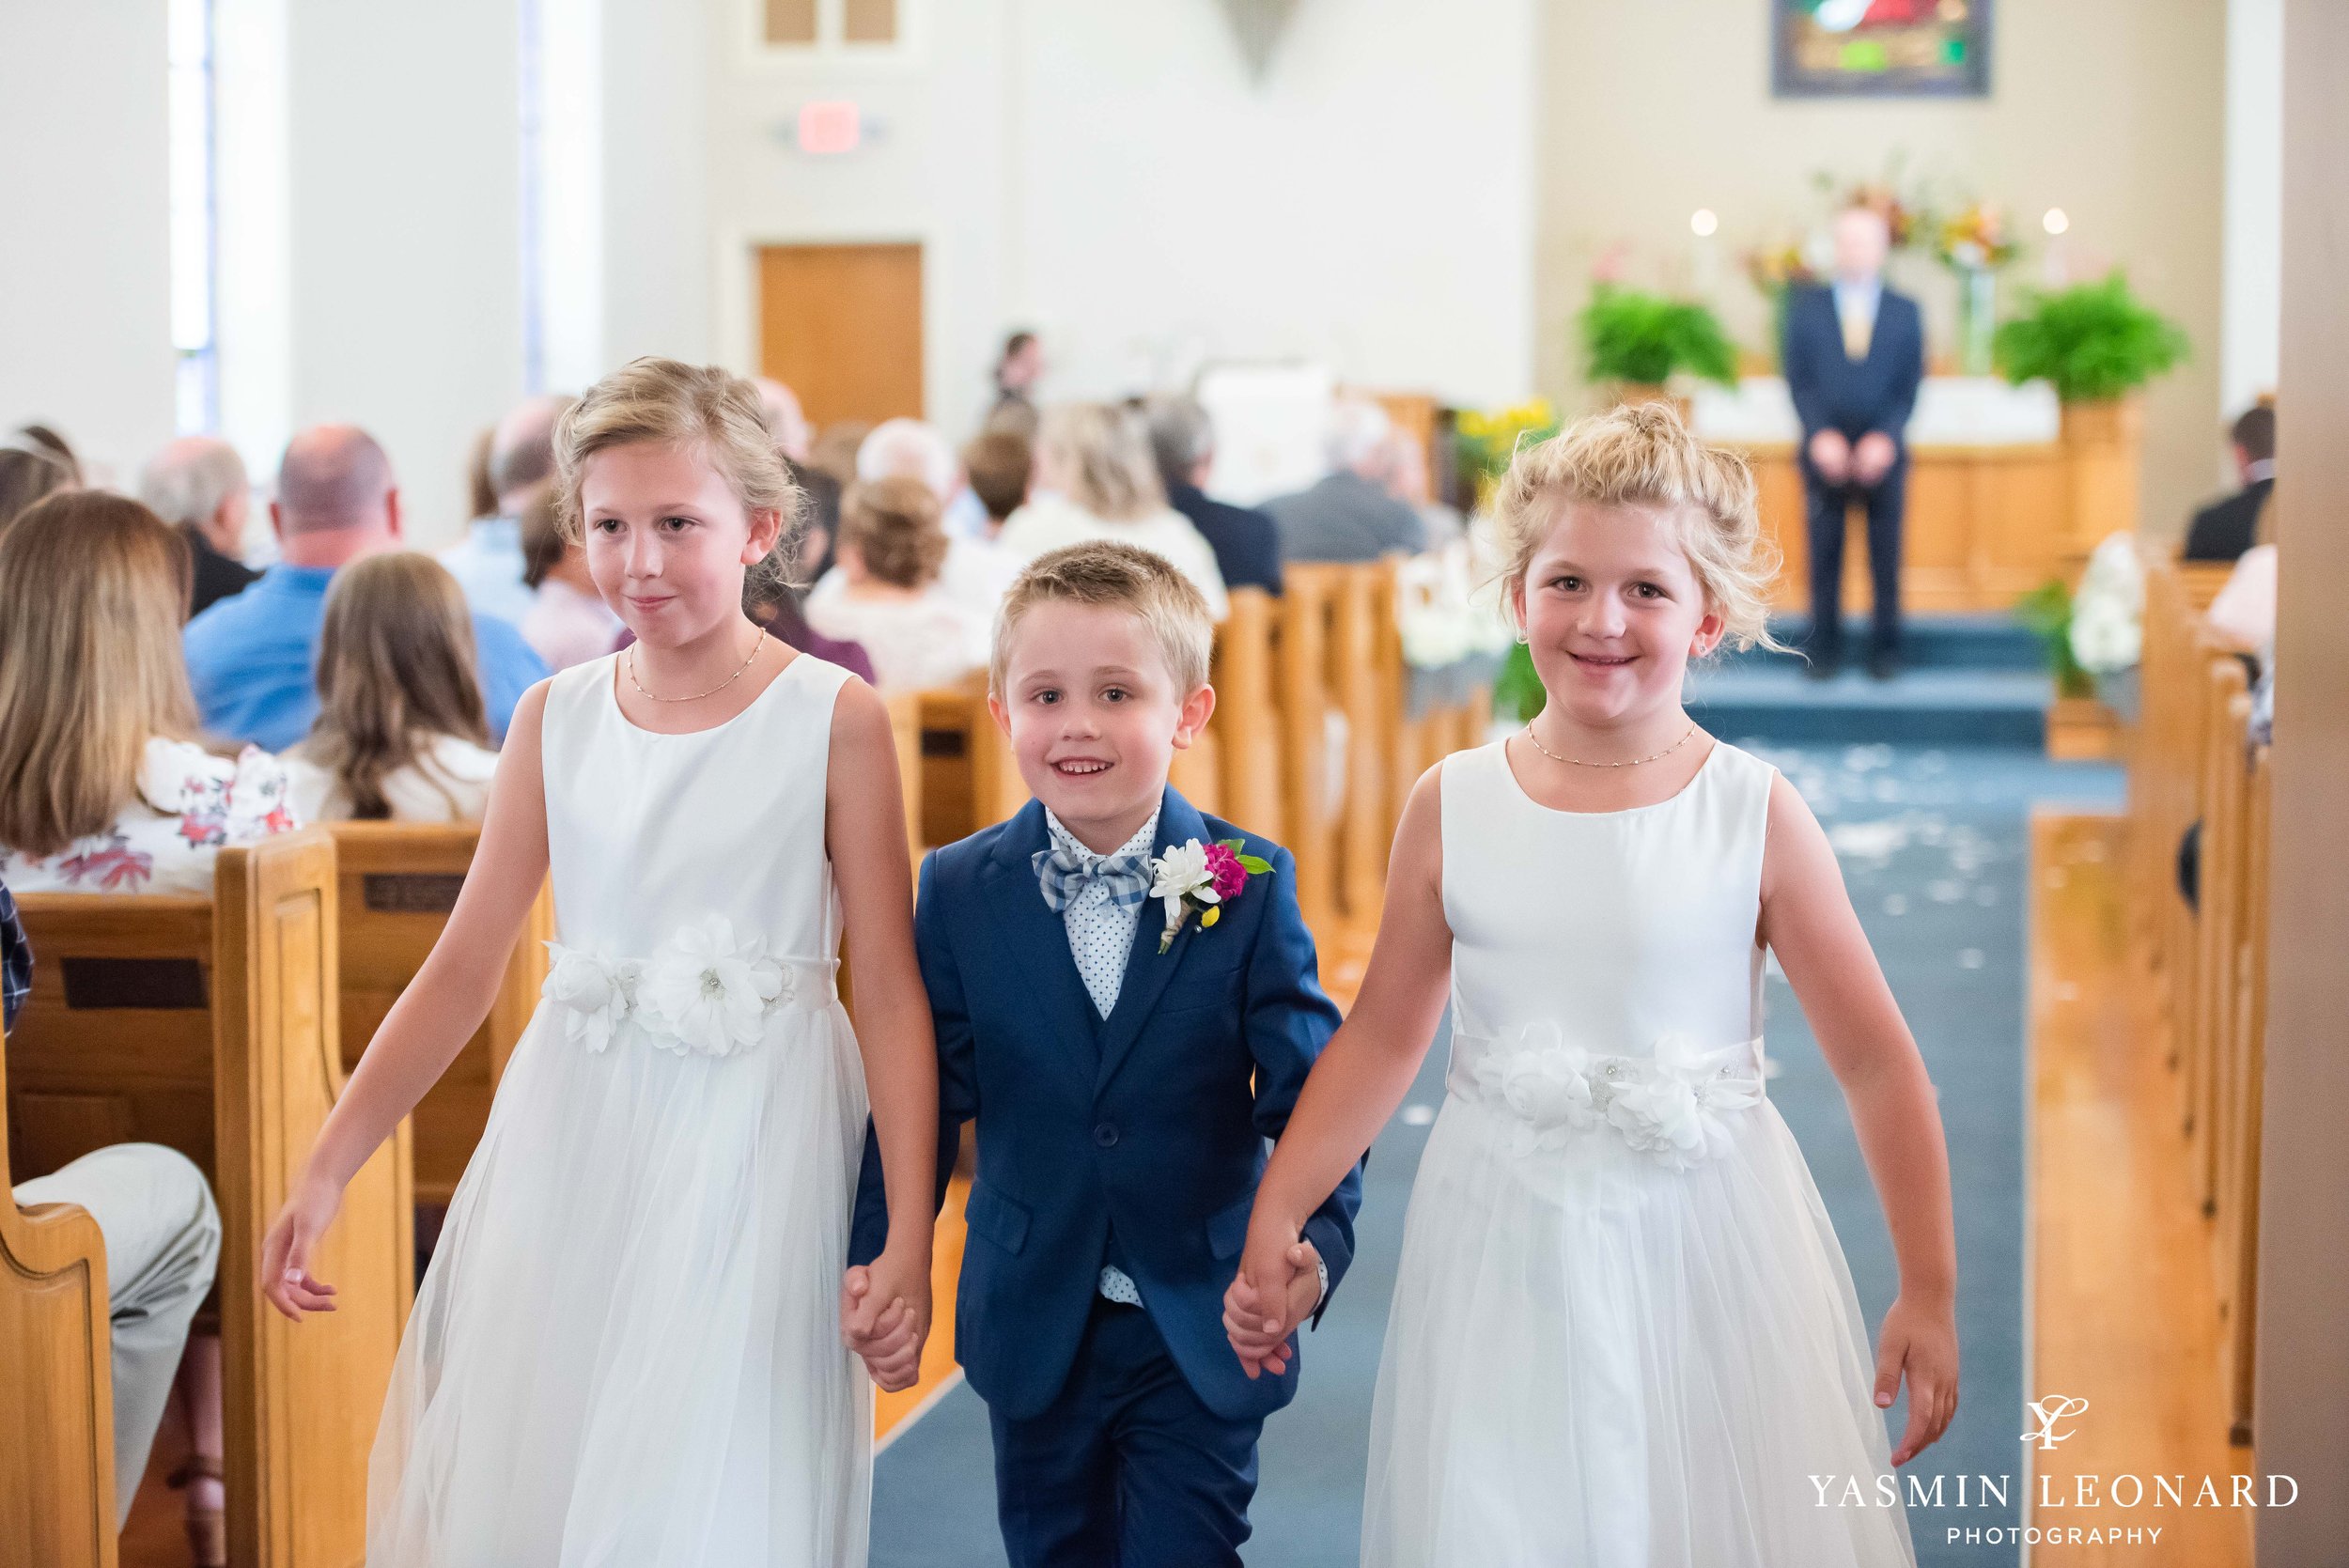 Shady Grove Church - Kayla and Brantley - NC Church Wedding - Best High Point Photographer - Yasmin Leonard Photography-21.jpg